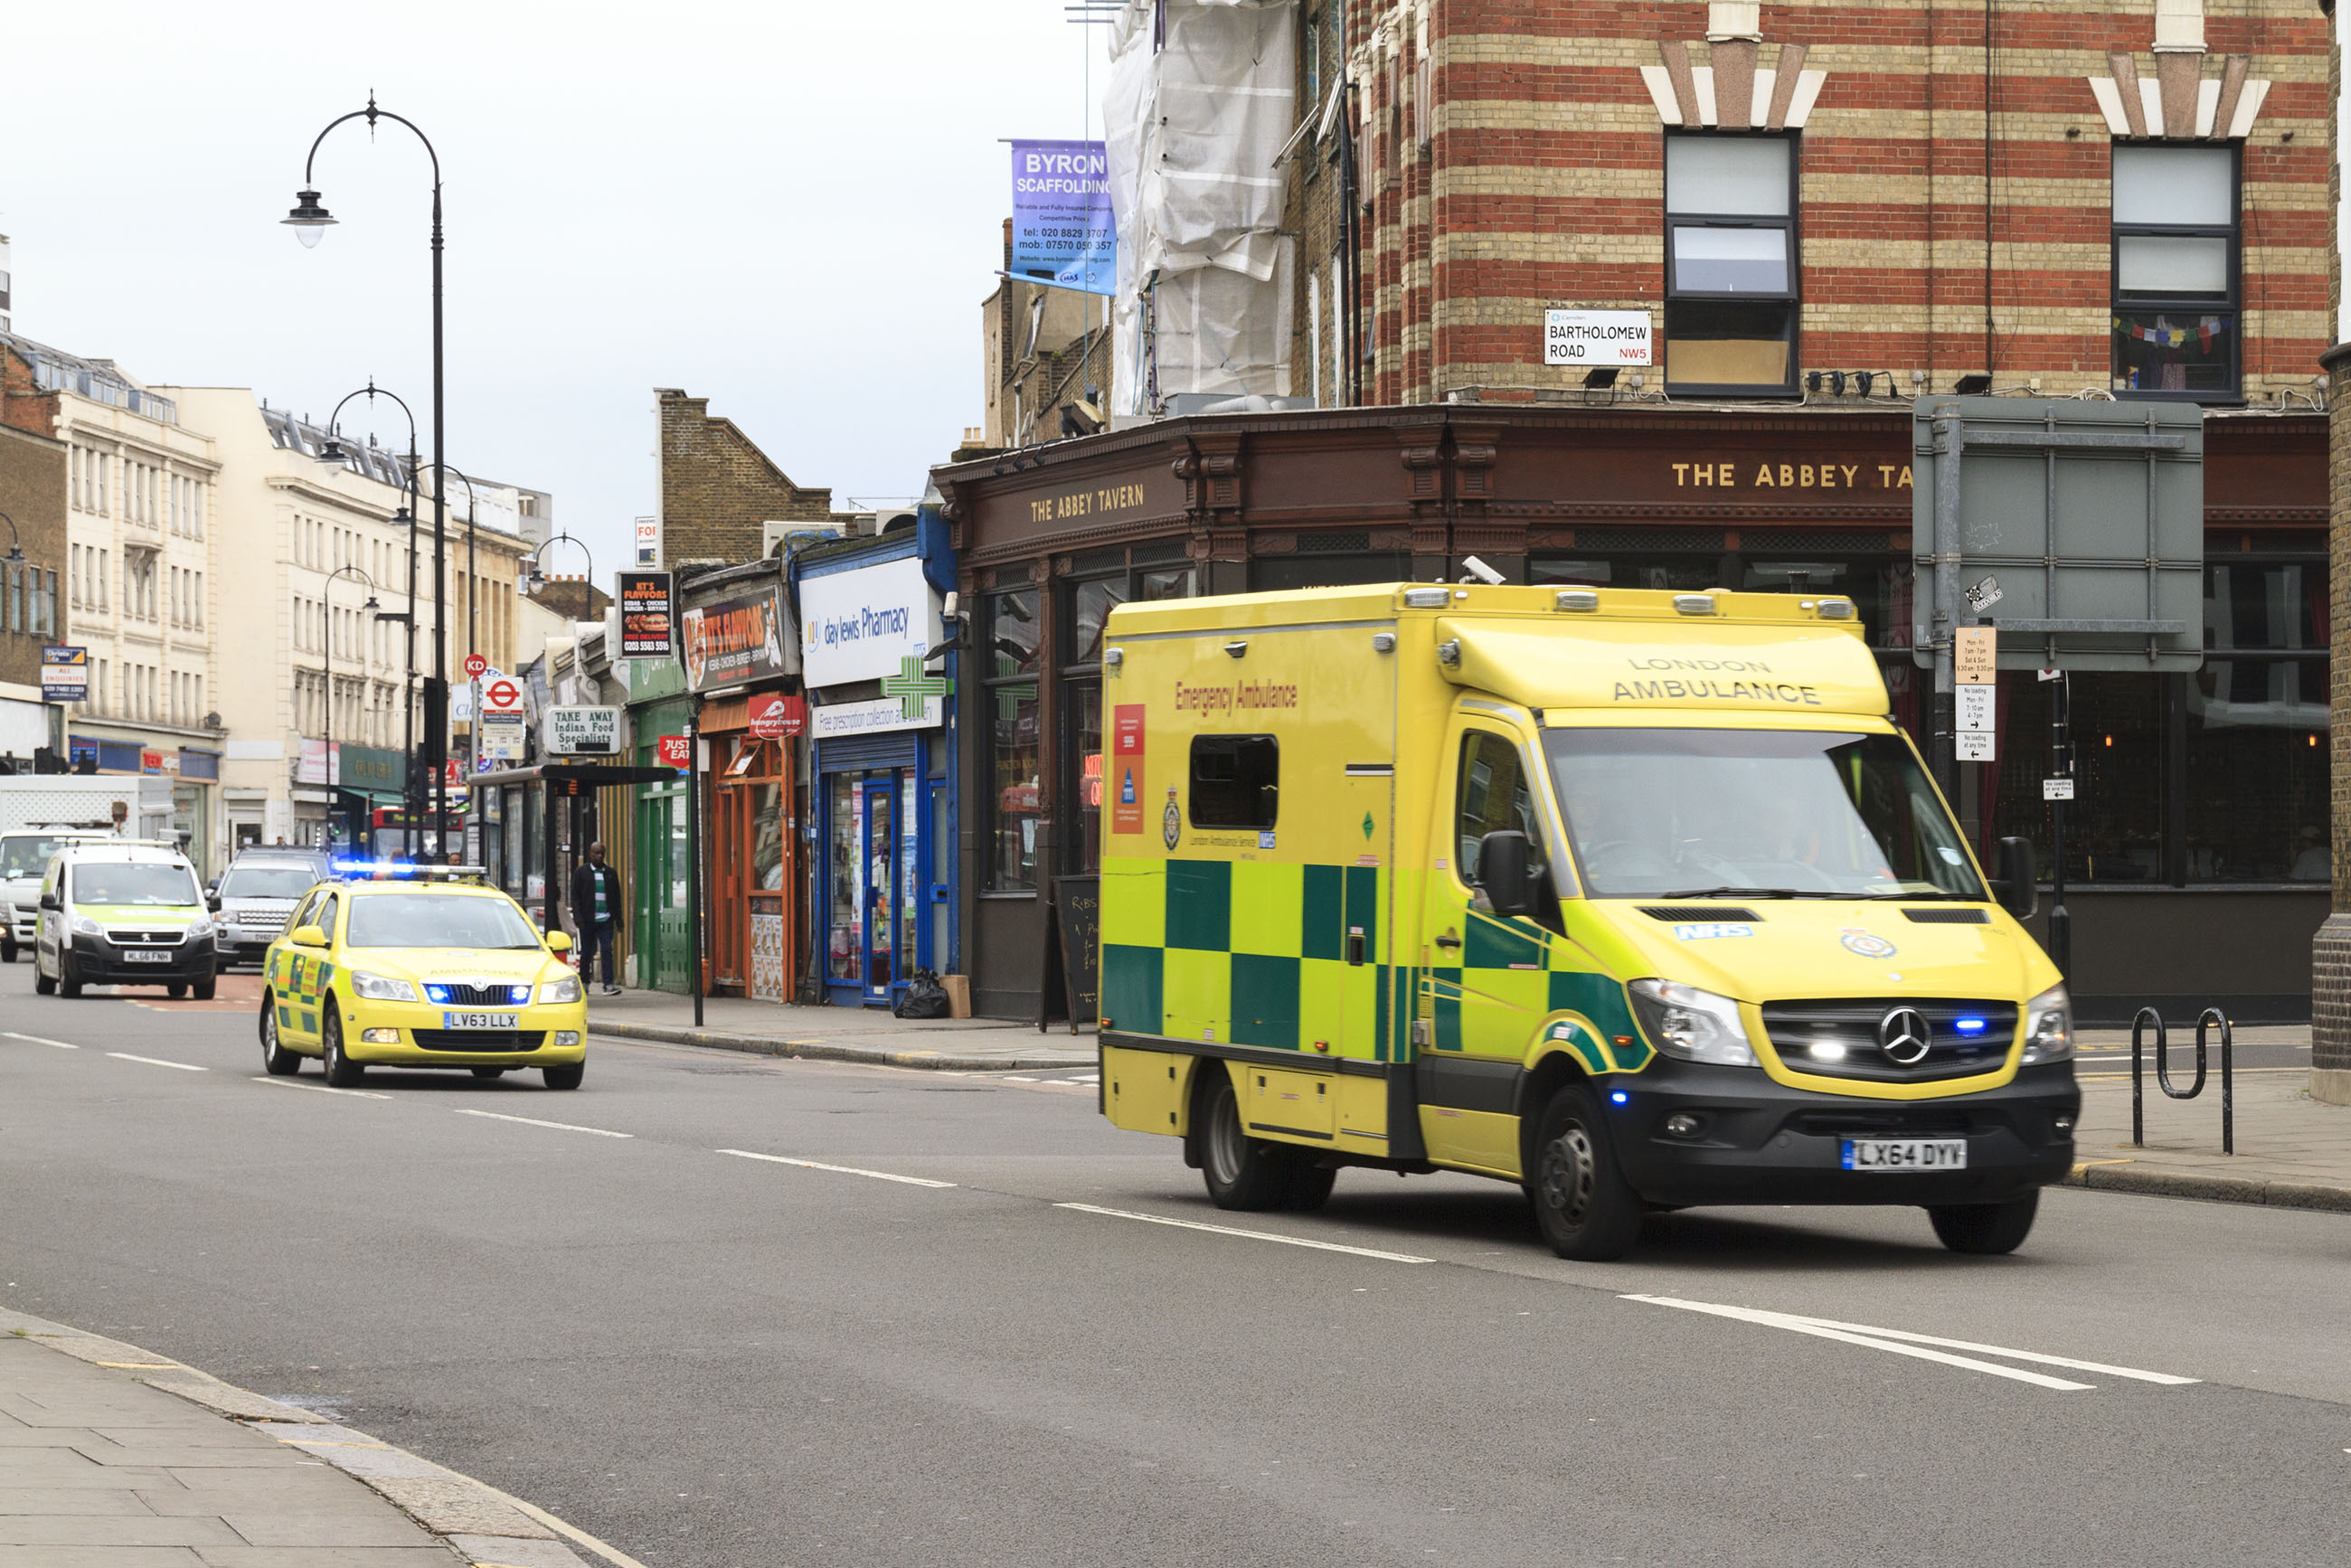 Emergency ambulance photo